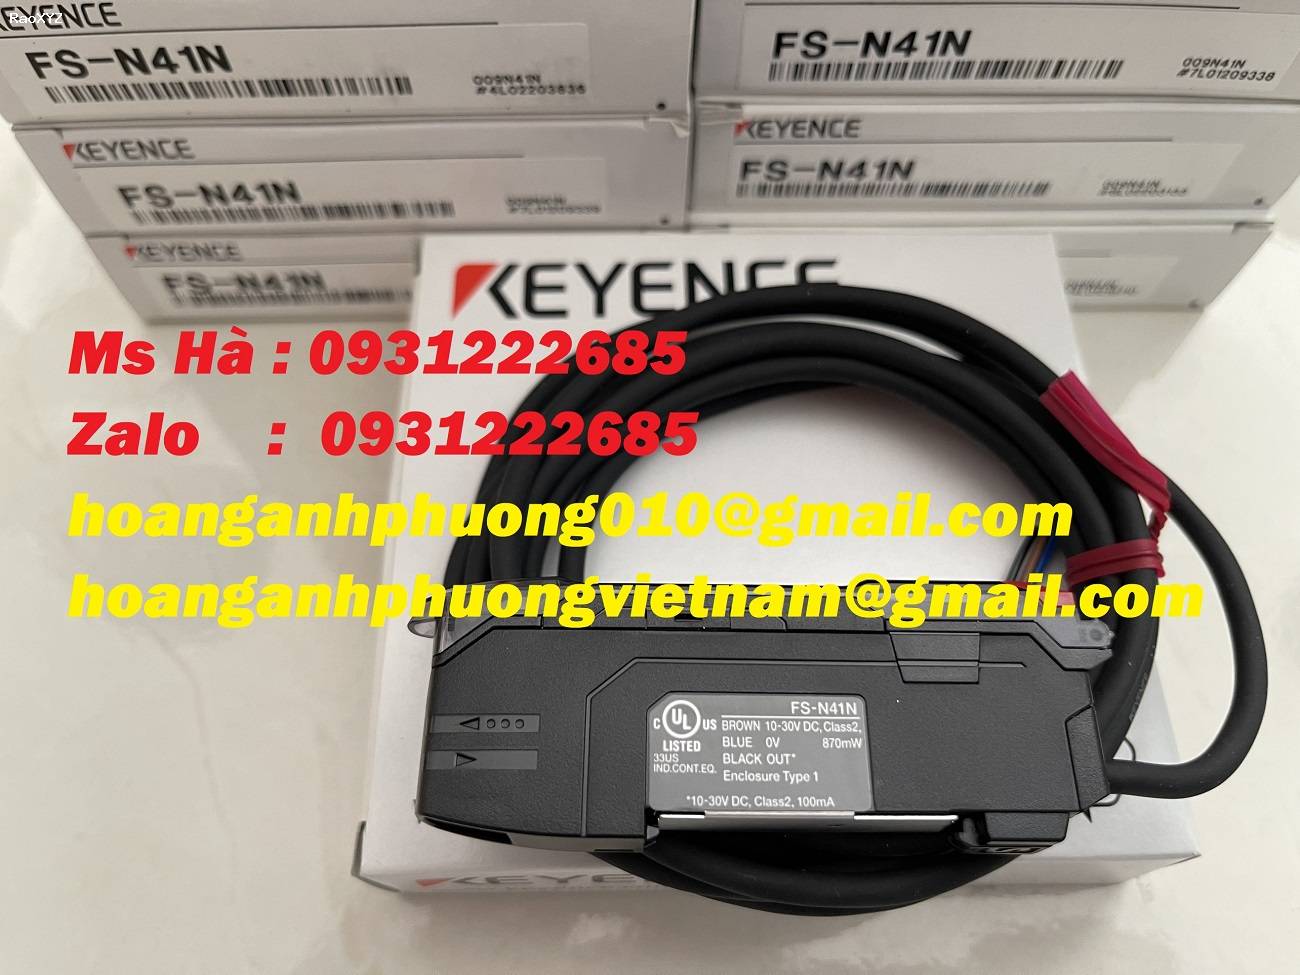 Cảm biến dòng FS-N series nhập khẩu hãng keyence FS-N41N